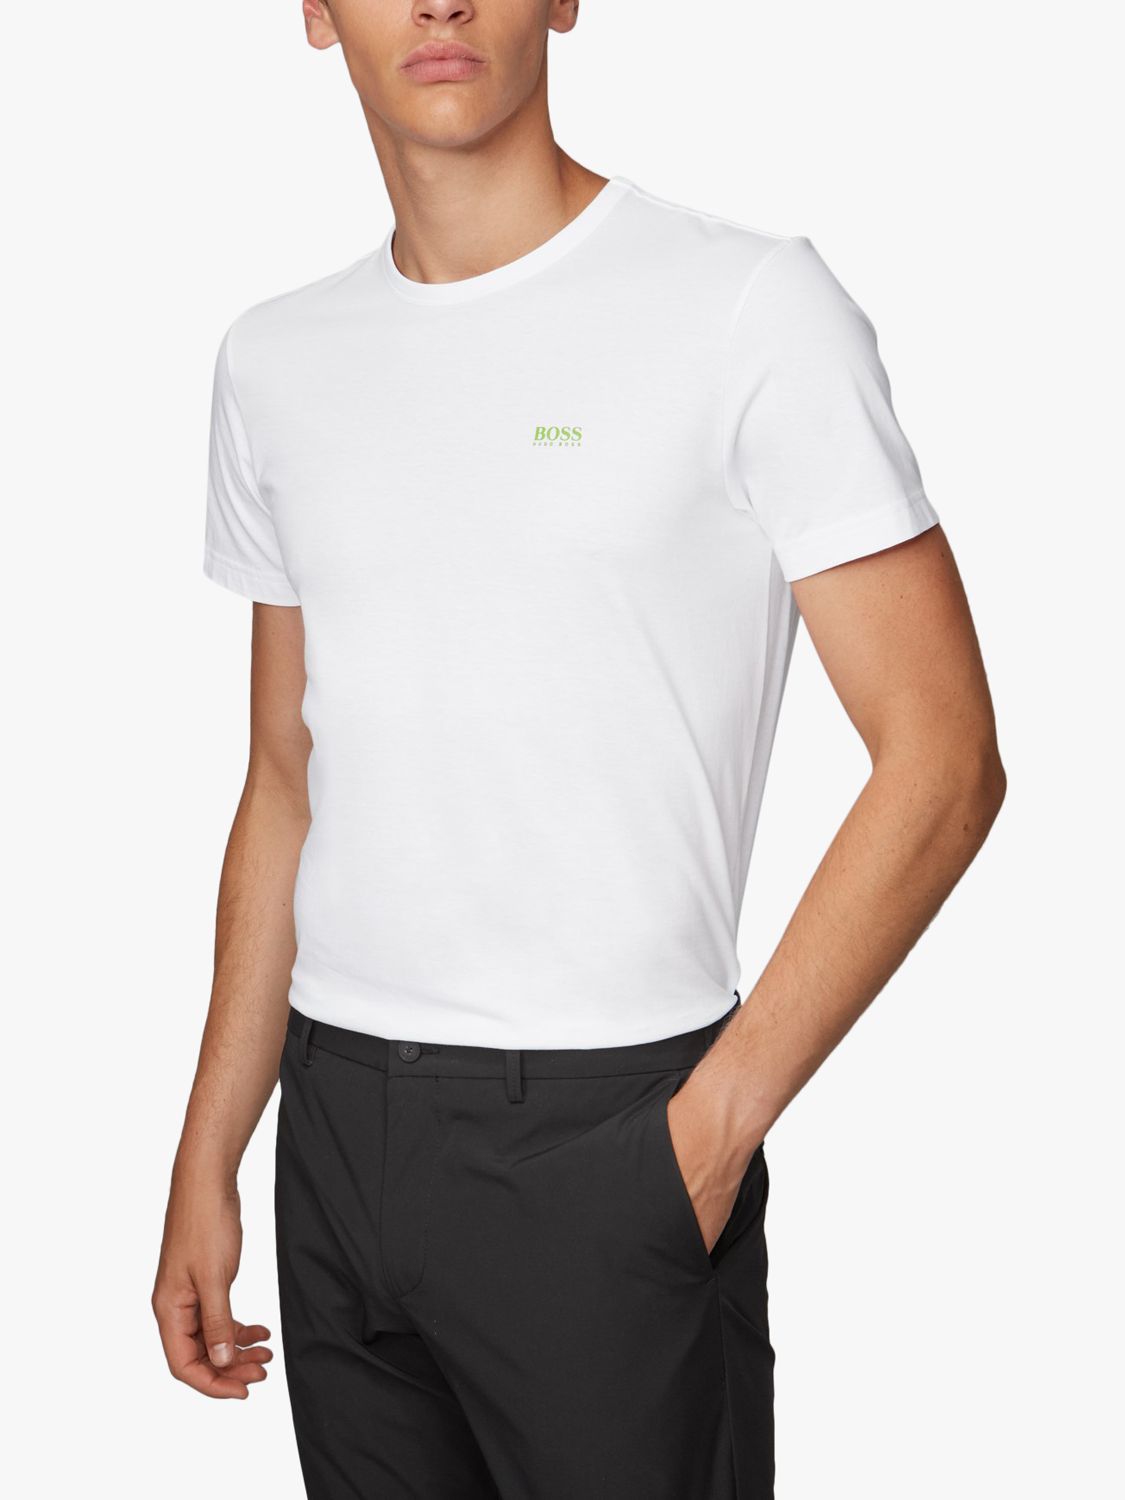 BOSS Short Sleeve Logo T-Shirt, White ...